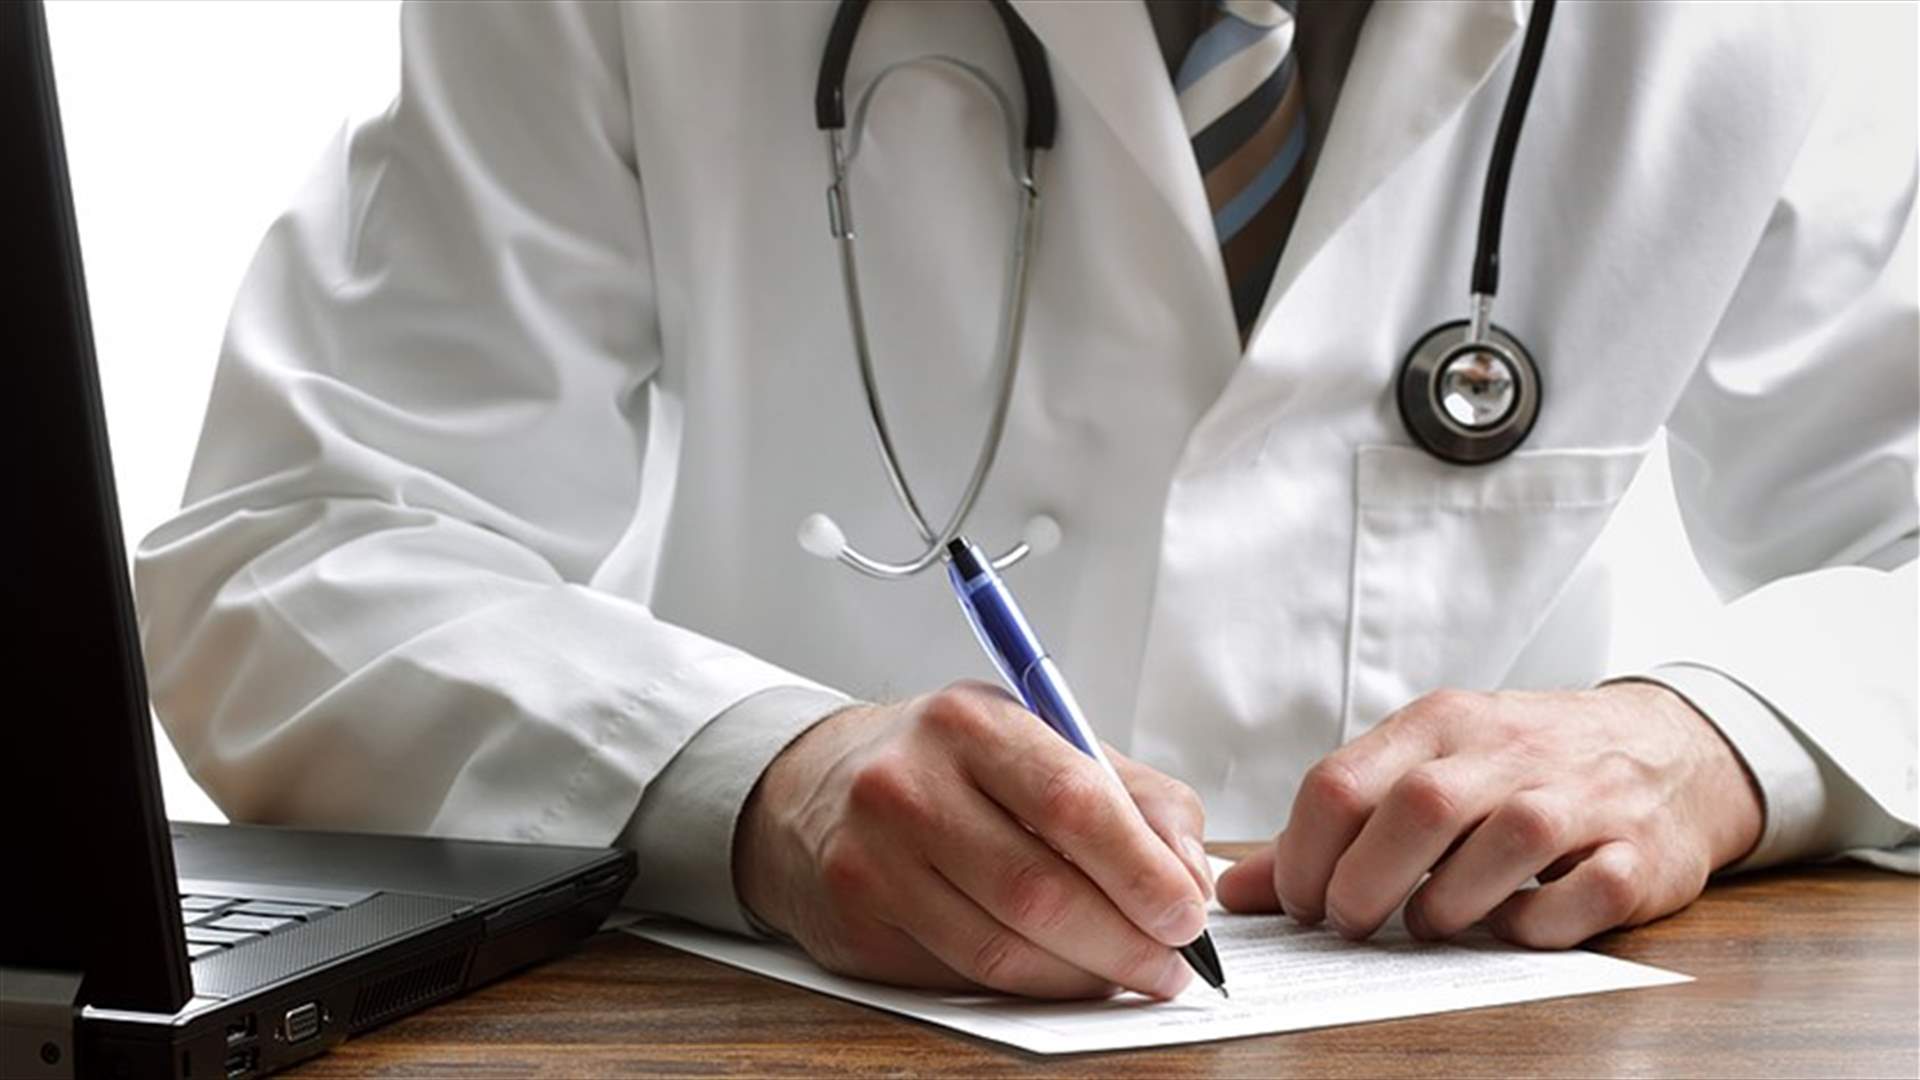 لماذا يكتب الأطباء دائماً بخط يدّ غير مفهوم؟